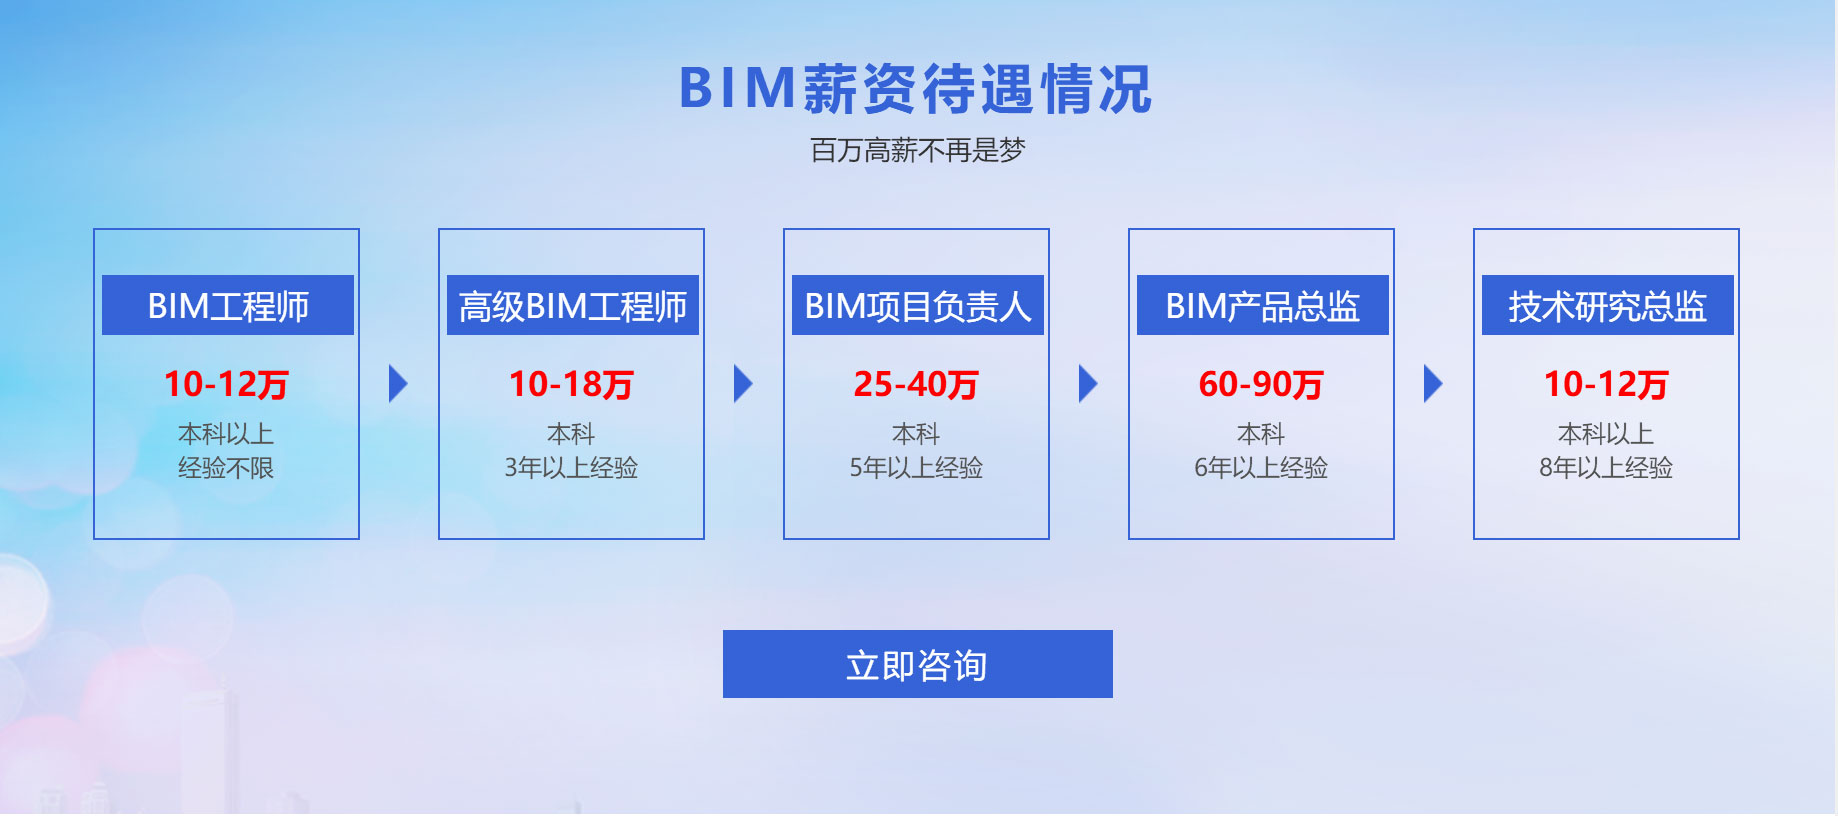 四川bim工程师能挂多少钱一年,四川bim工程师能挂多少钱  第1张